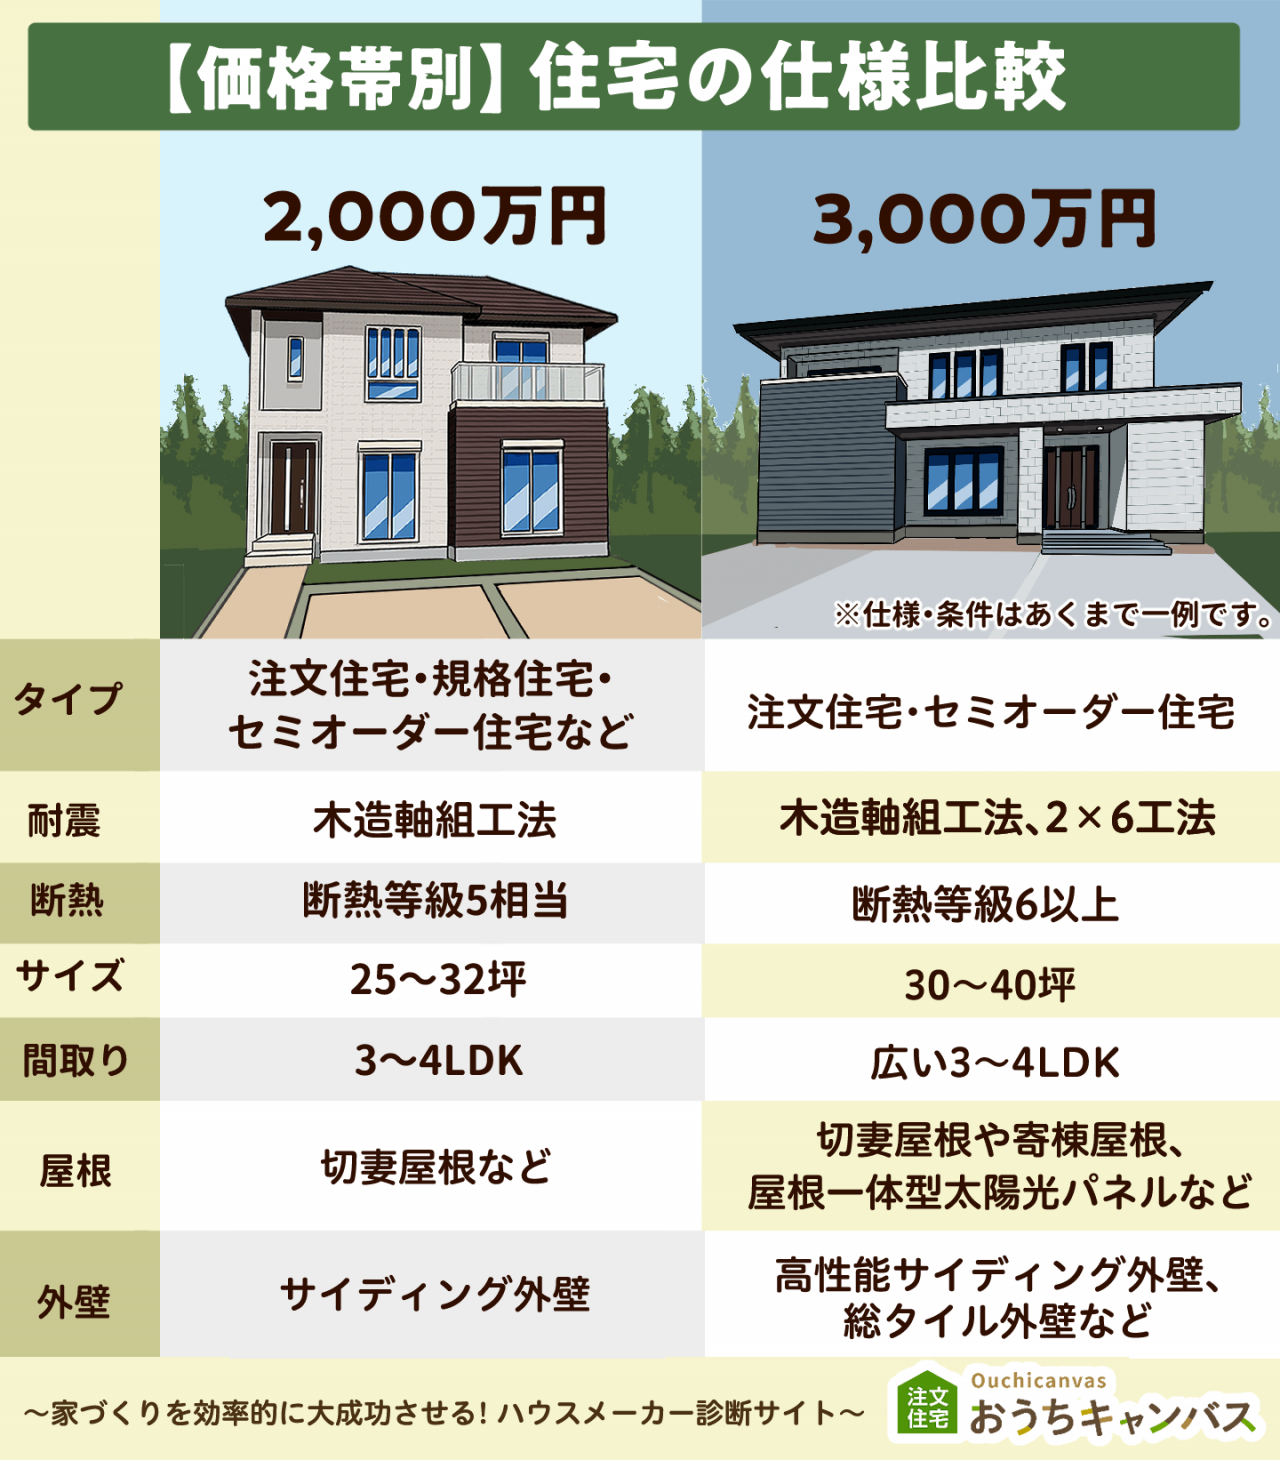 2,000万円の家と3,000万円の家の比較